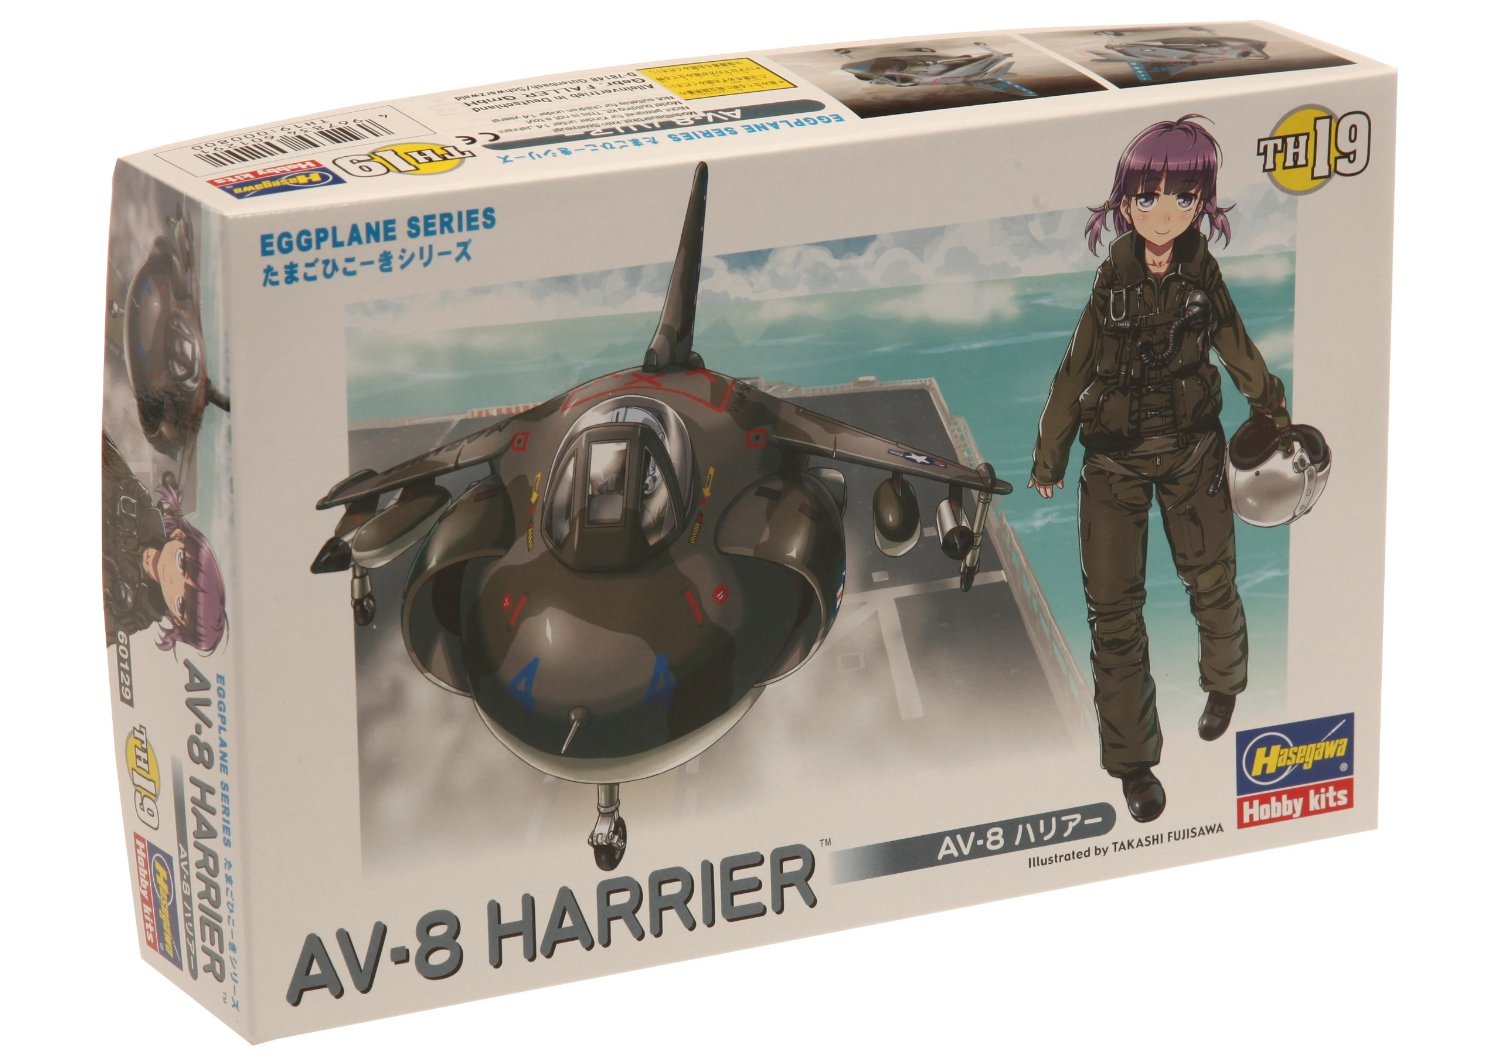 TH19 AV-8 Harrier